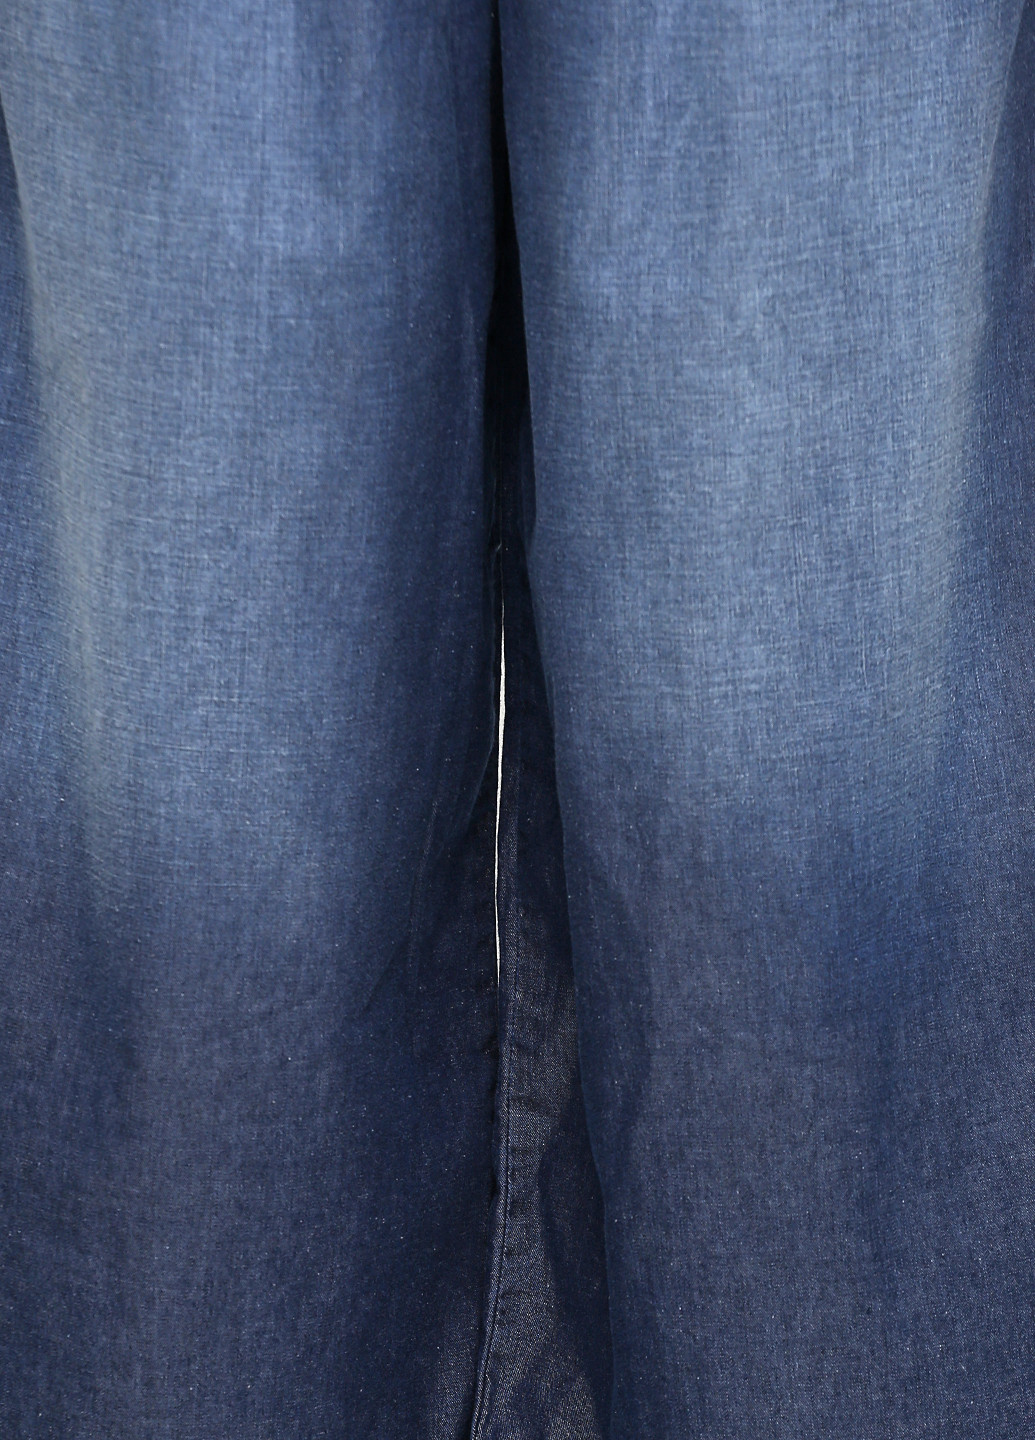 Синие джинсовые демисезонные кюлоты брюки United Colors of Benetton